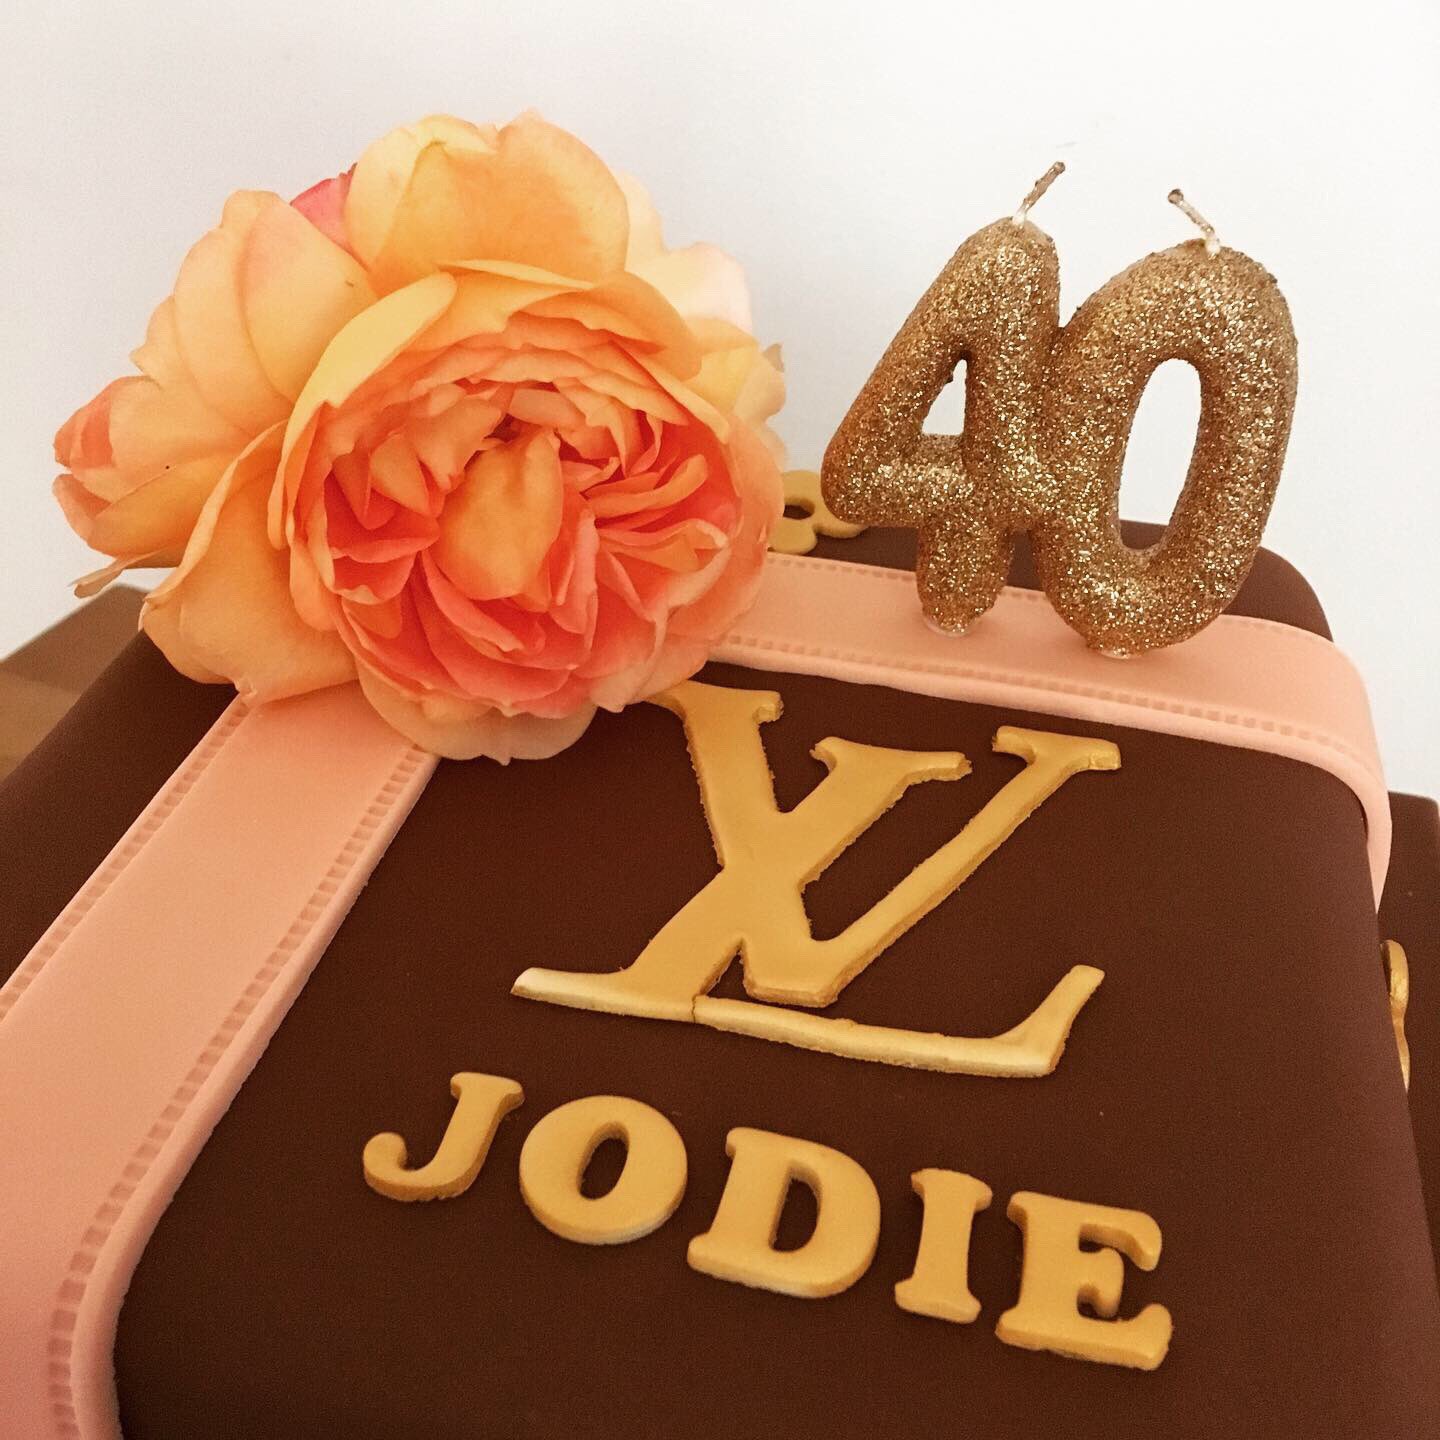 Louis Vuitton 40th birthday cake